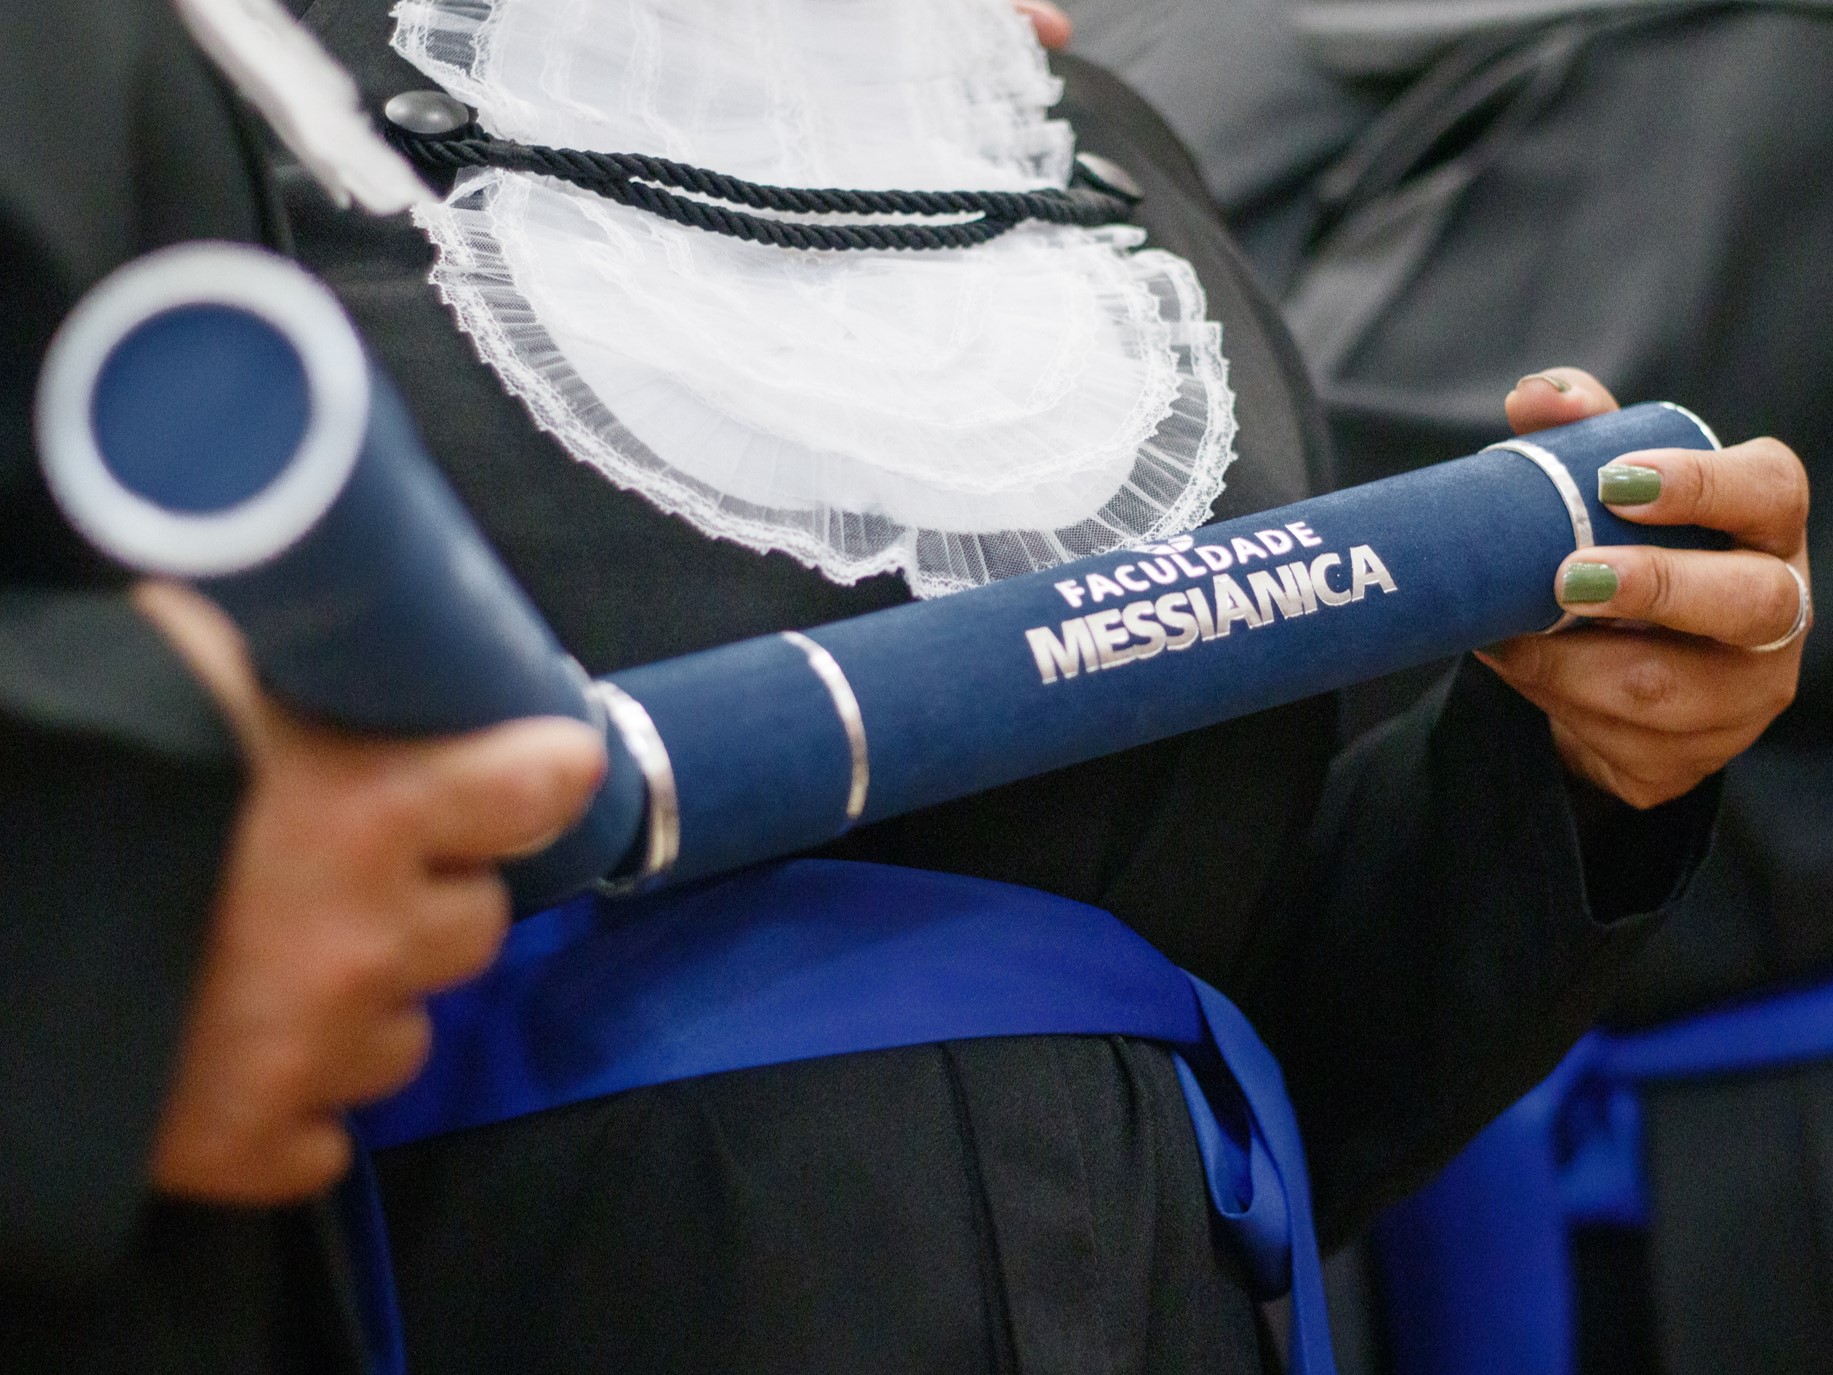 Formandos da Faculdade Messinica celebram a Cerimnia de Colao de Grau